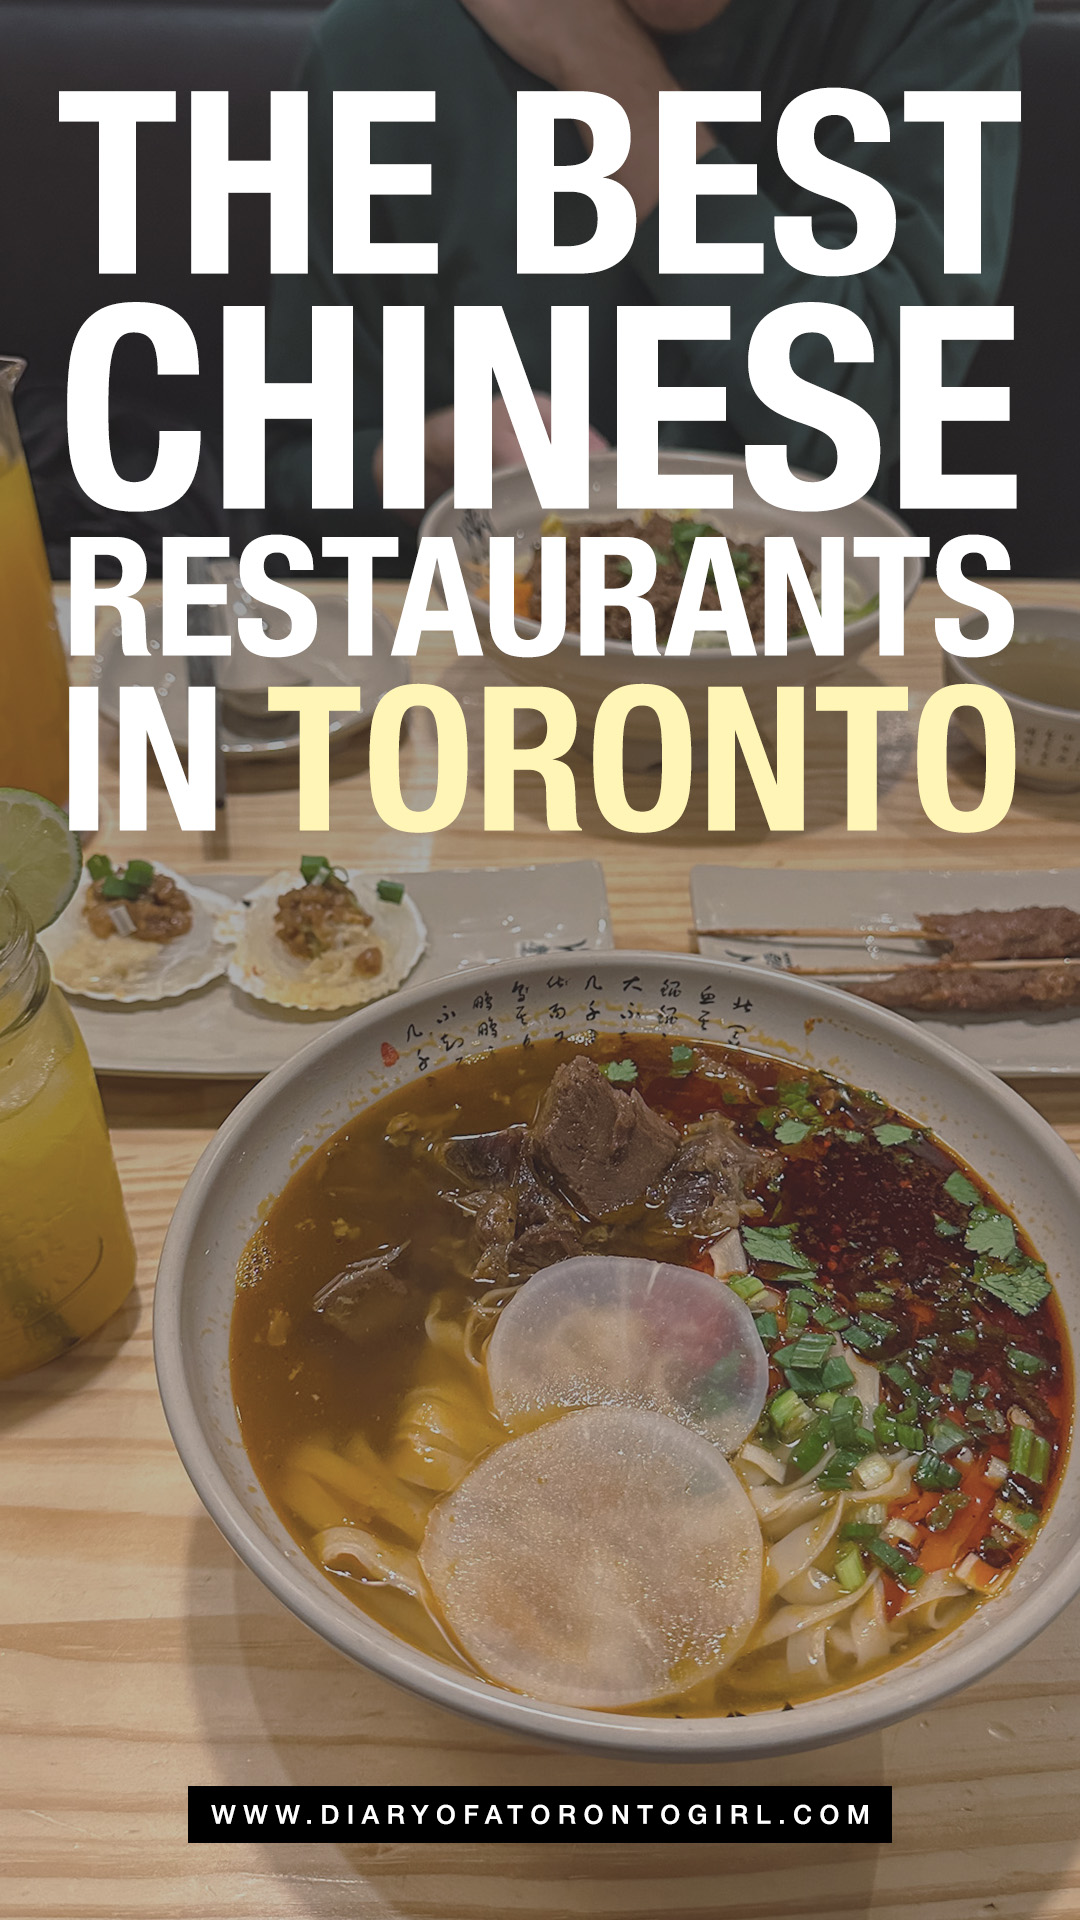 Best Chinese restaurants in Toronto